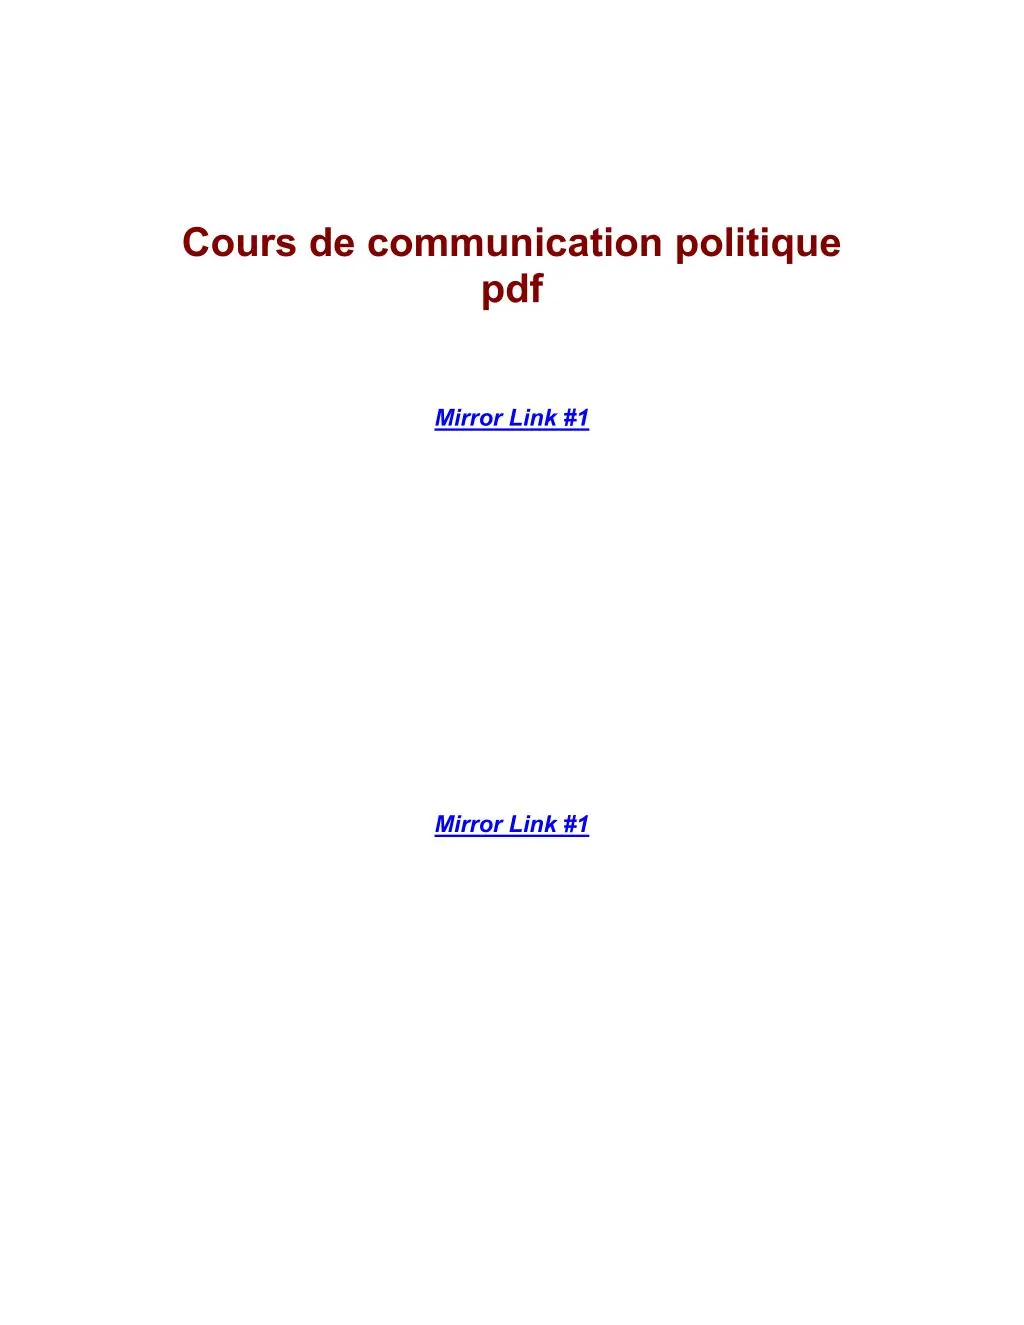 cours de communication politique pdf nuke those